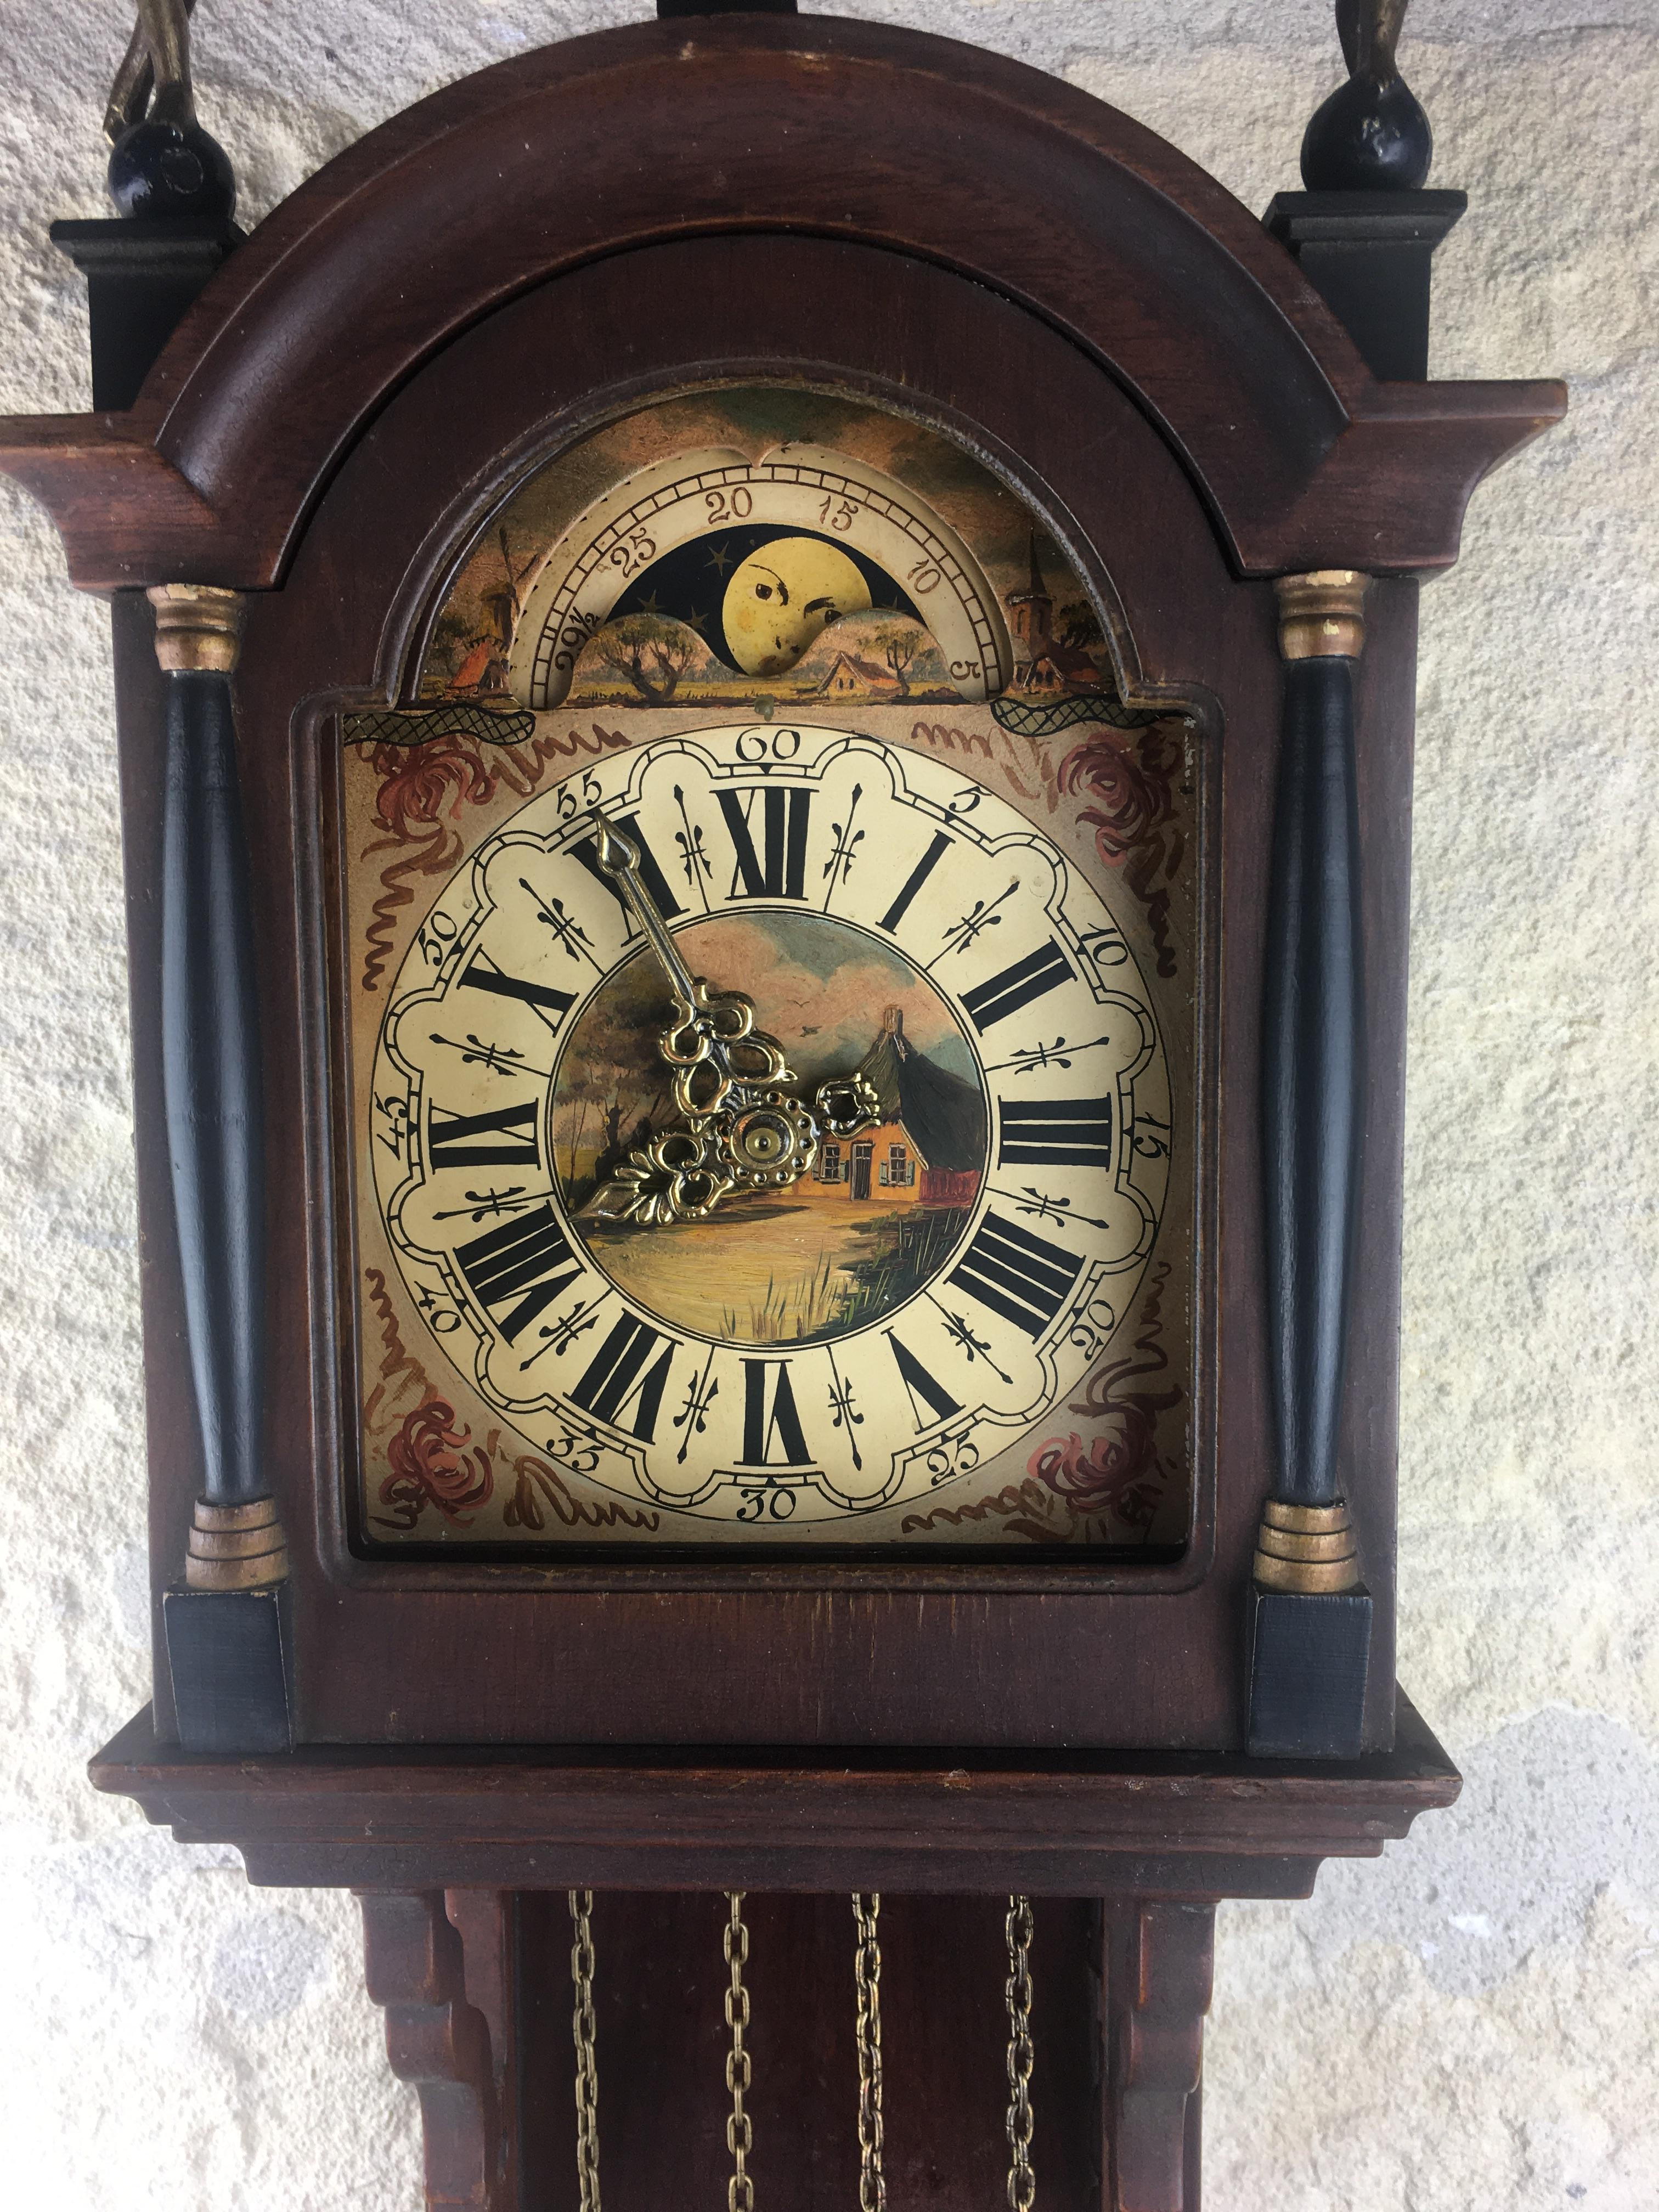 Une horloge Schippertje hollandaise vintage originale. Ce type d'horloge était appelé Schippertje (signifie Skipper):: car il était utilisé sur les bateaux néerlandais. En effet:: ils ont pu continuer à courir alors que le bateau se balançait sur la